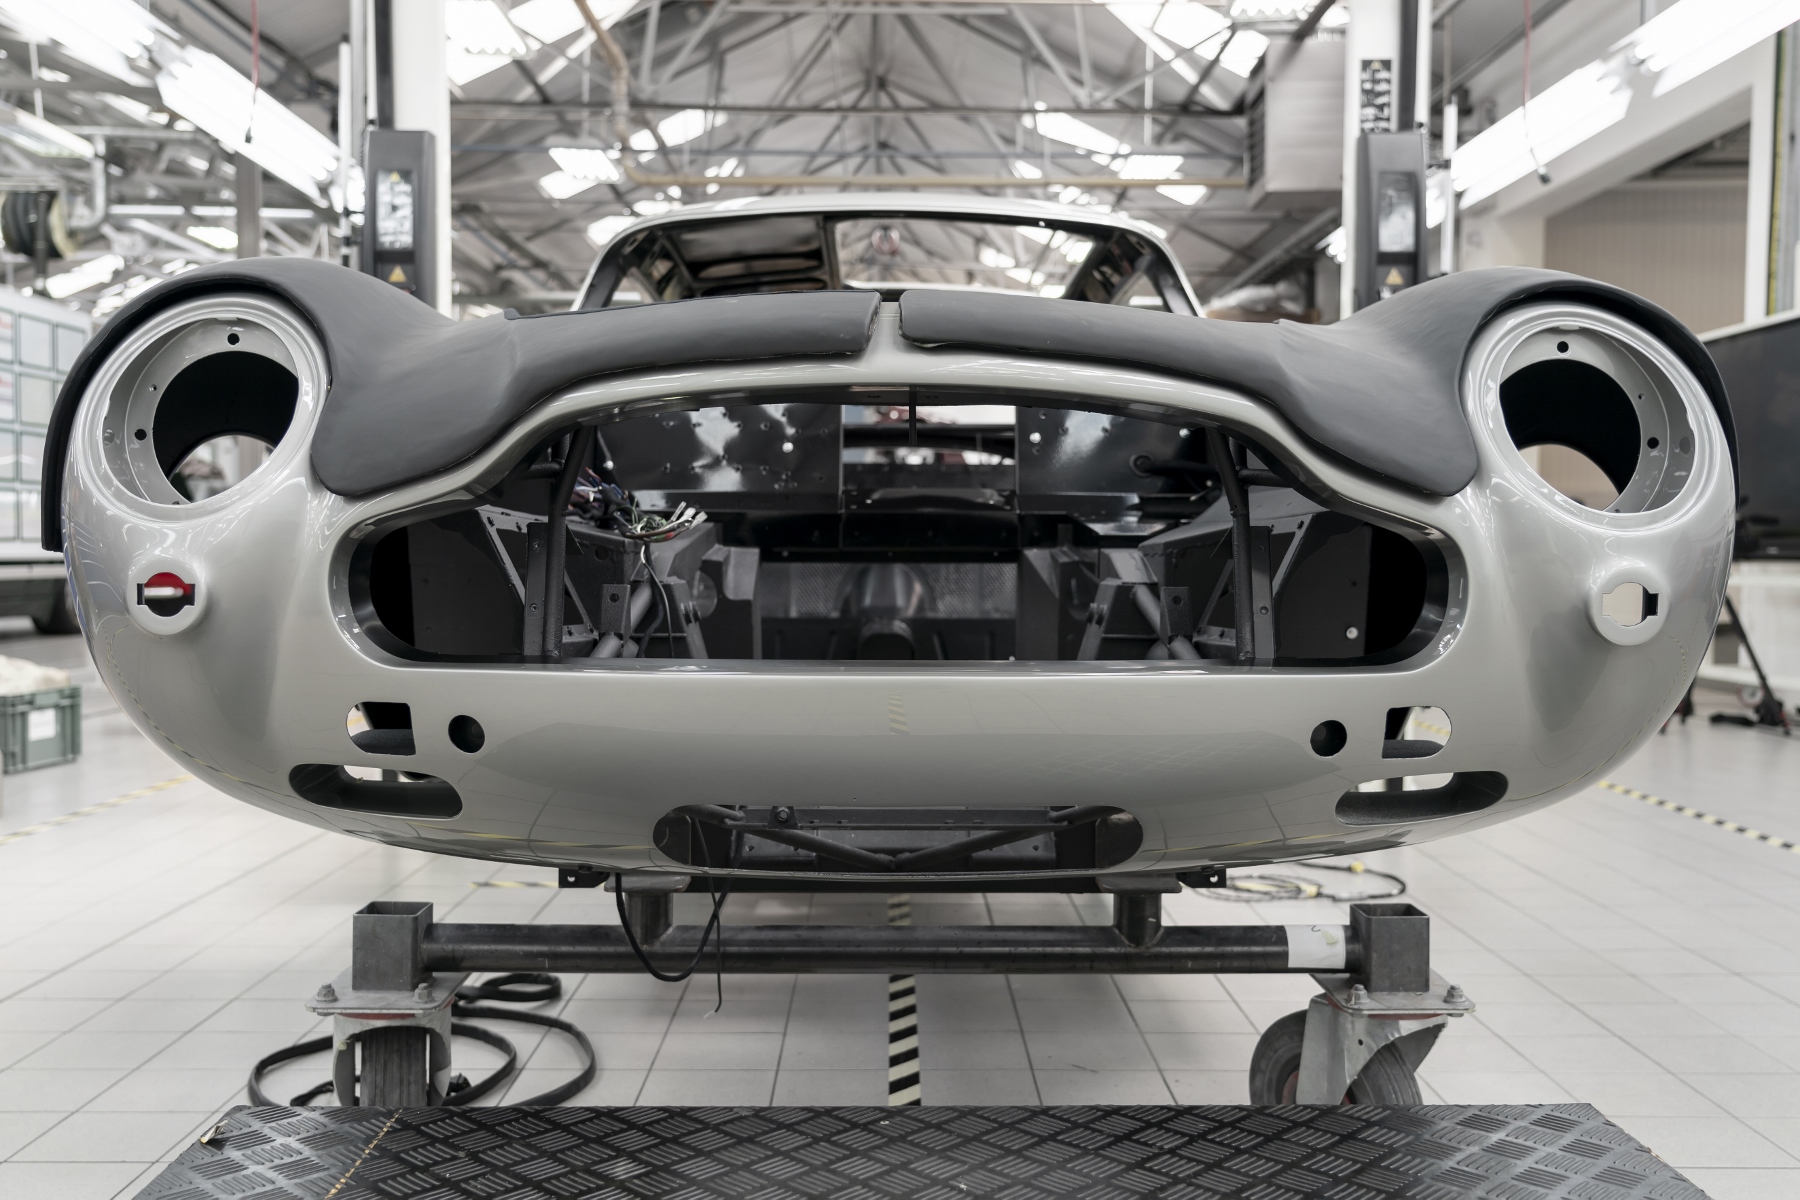 Po 55 rokoch začne Aston Martin opäť vyrábať auto Jamesa Bonda aj s filmovými vychytávkami